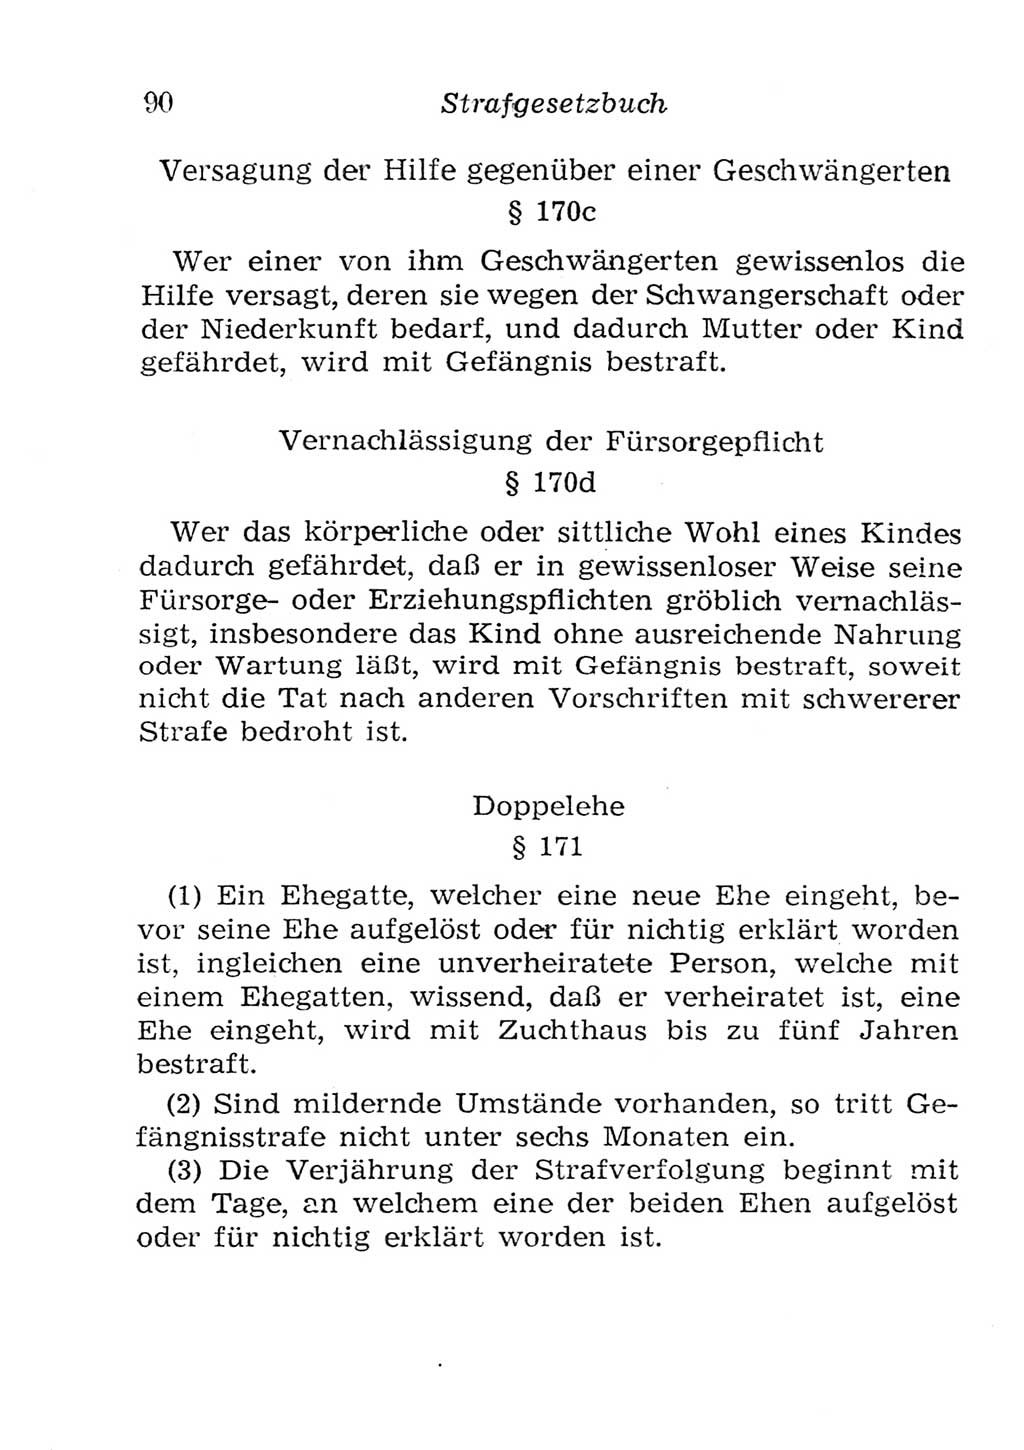 Strafgesetzbuch (StGB) und andere Strafgesetze [Deutsche Demokratische Republik (DDR)] 1957, Seite 90 (StGB Strafges. DDR 1957, S. 90)